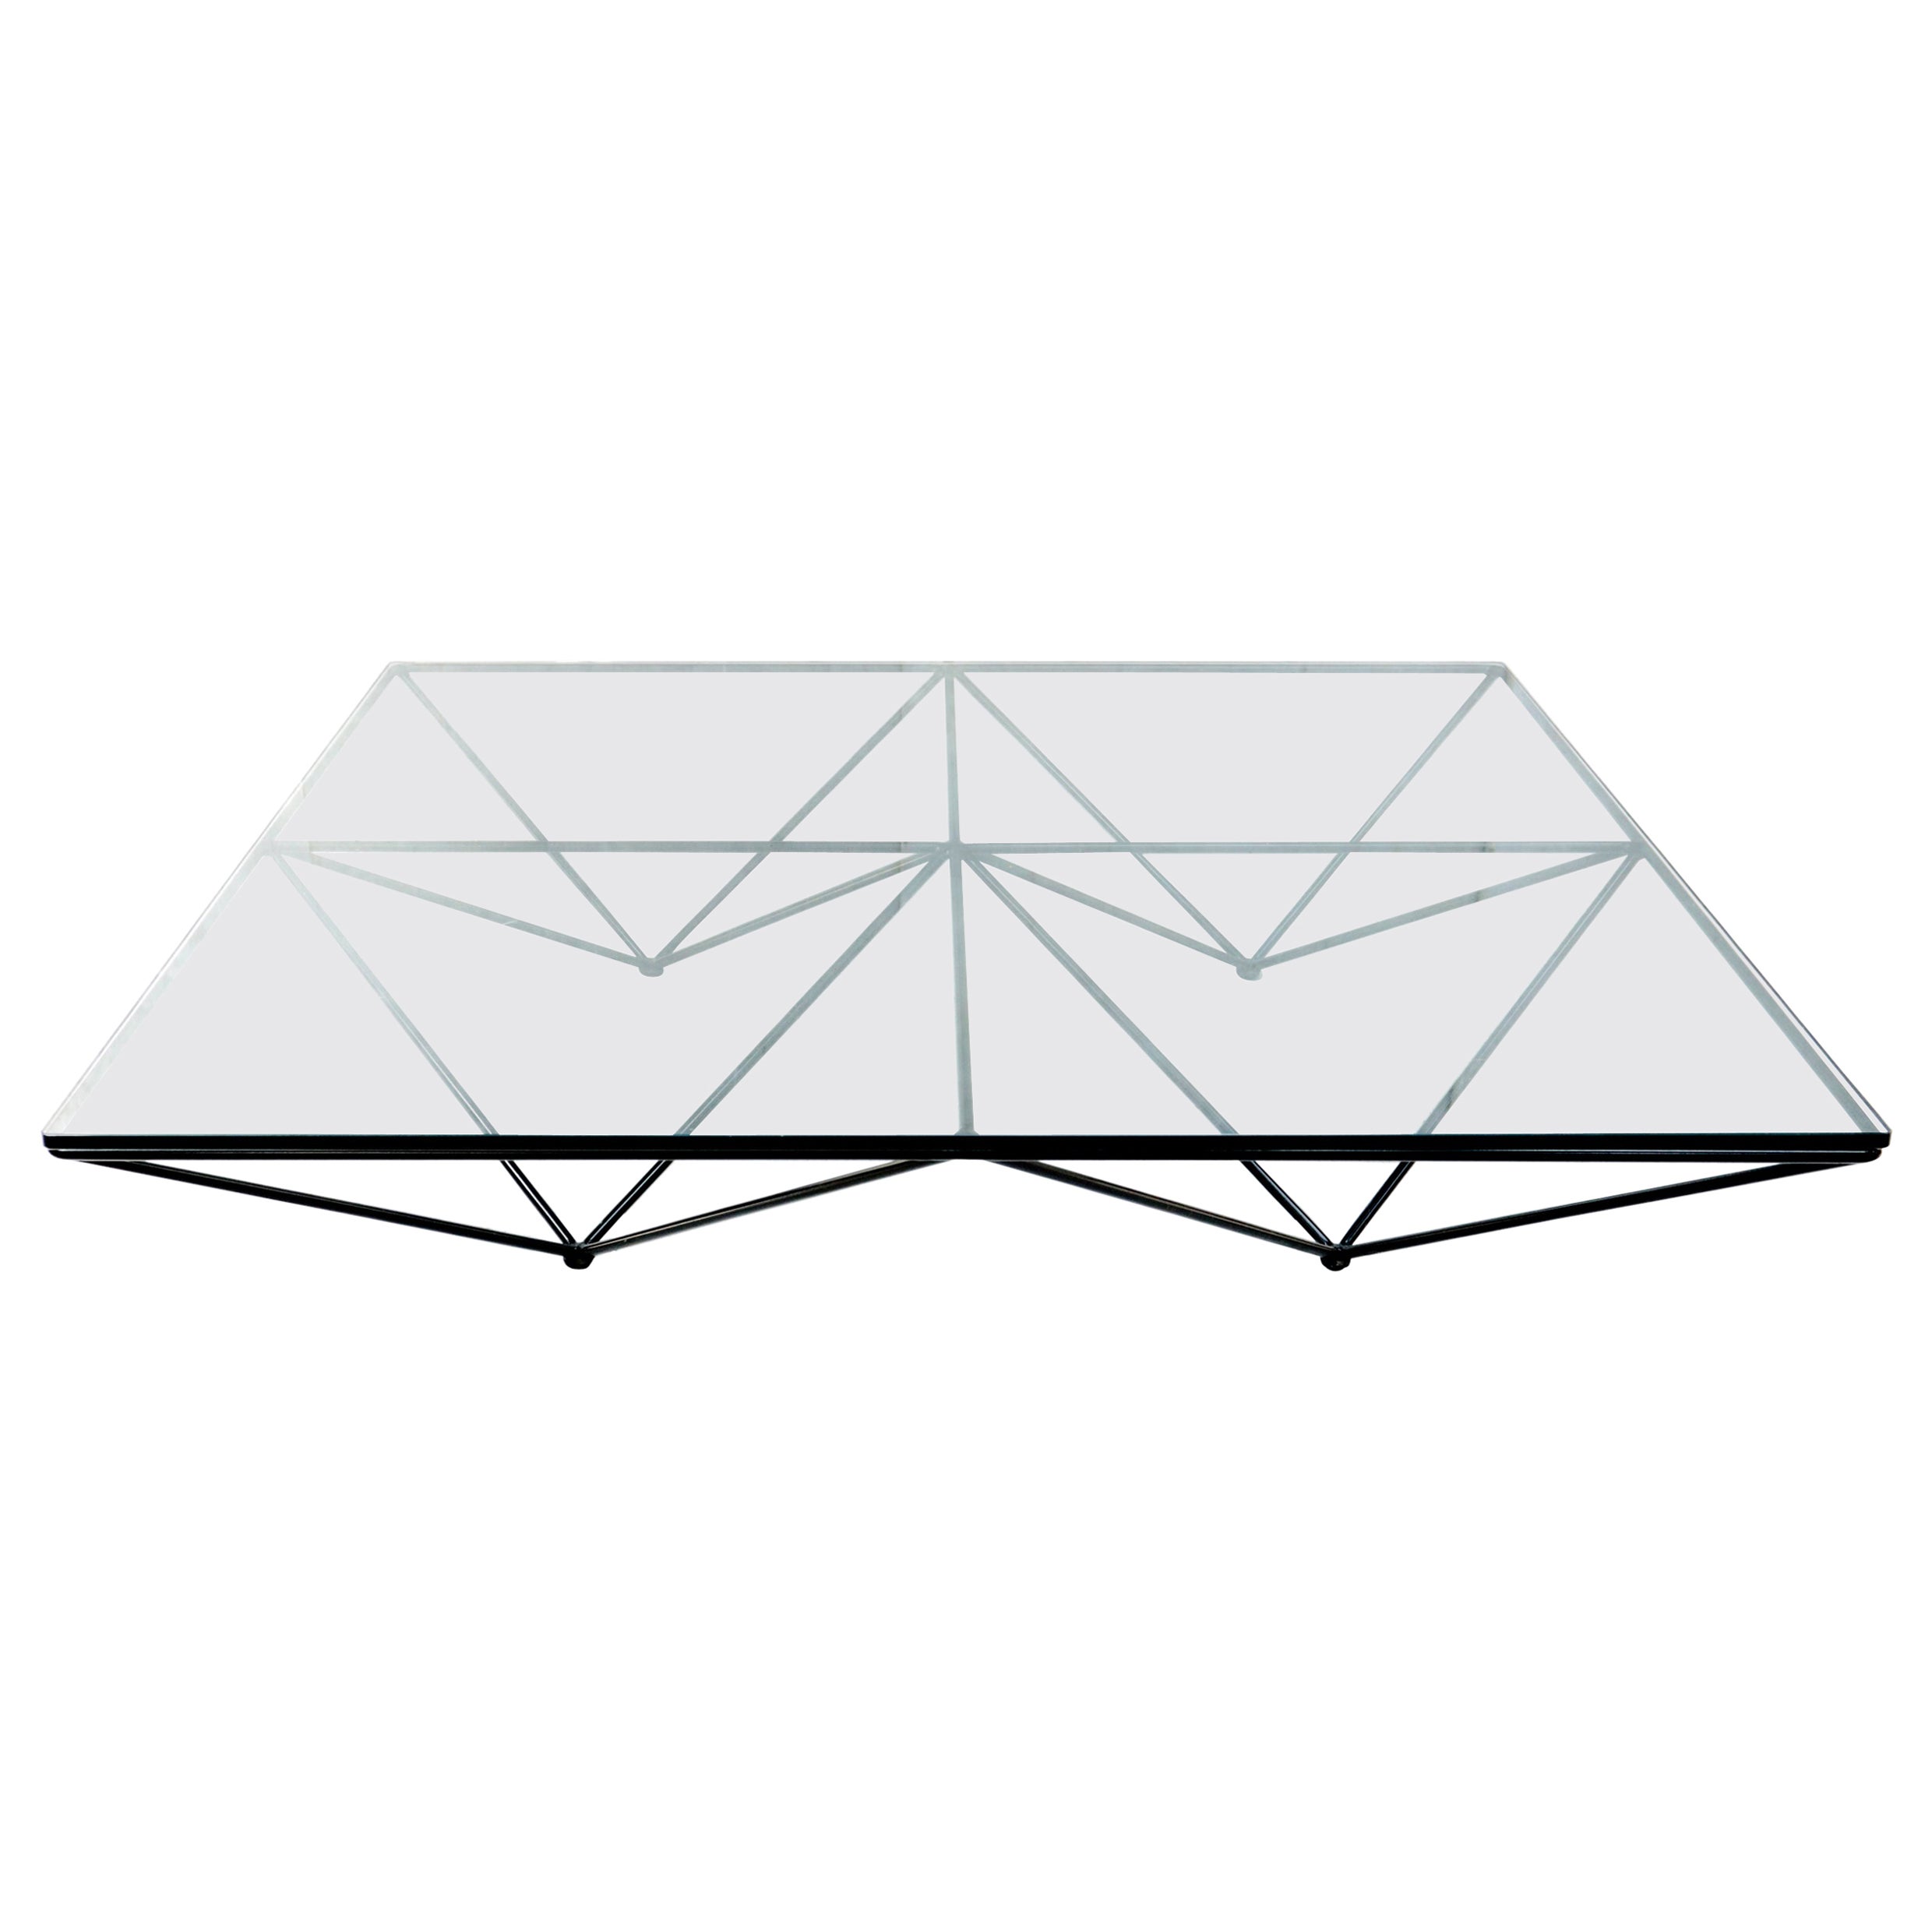 Large Paolo Piva "Alanda" Pyramid Table 80's Design B&B Italia